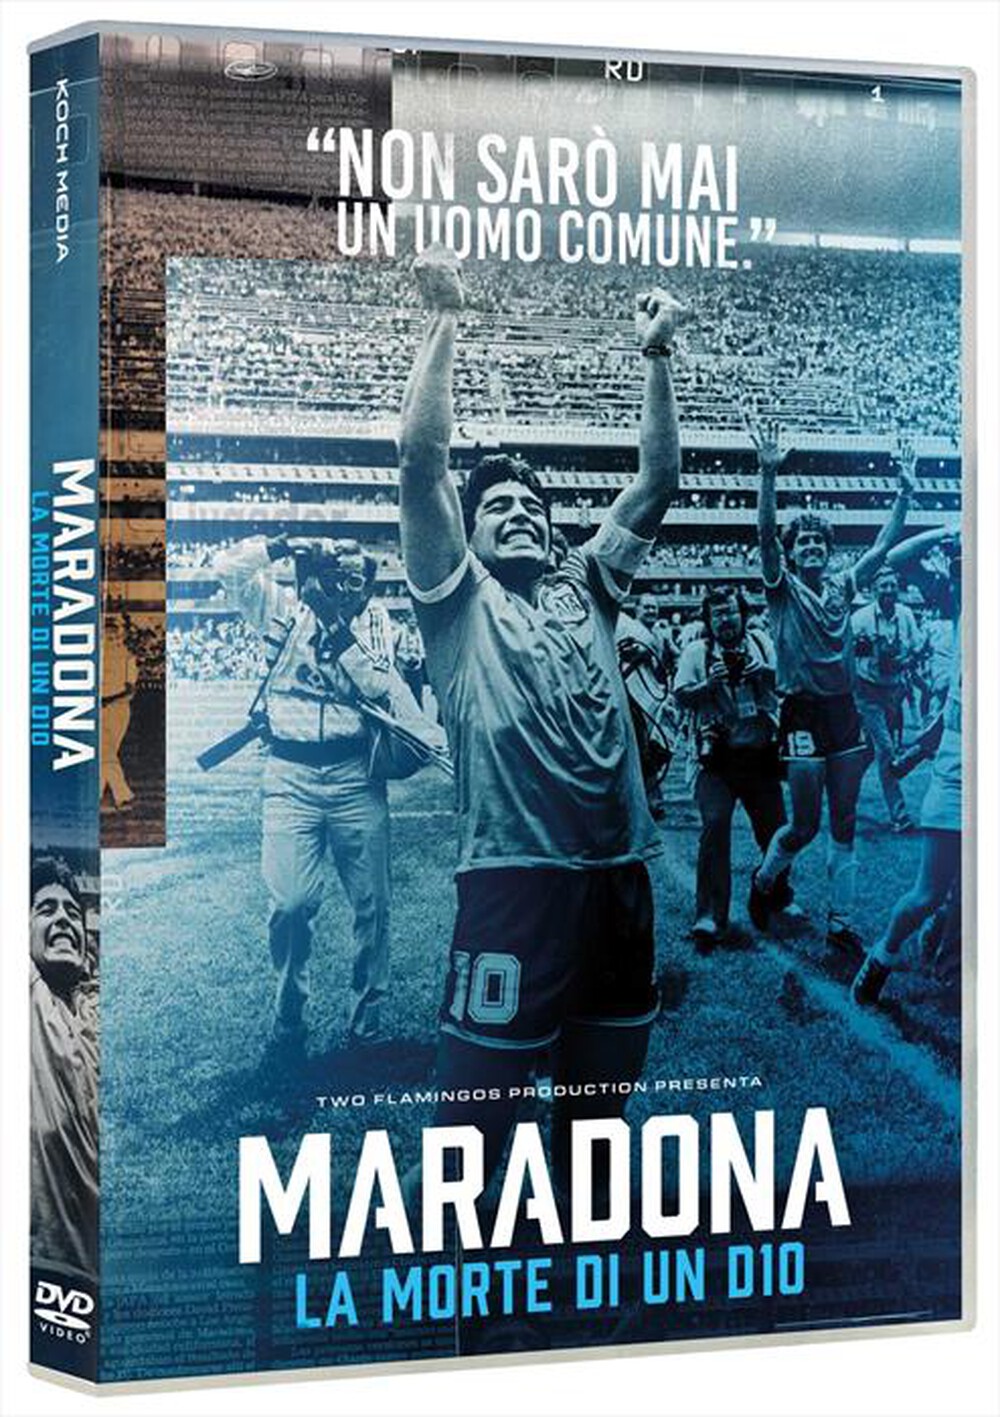 "KOCH MEDIA - Maradona: Morte Di Un D10"